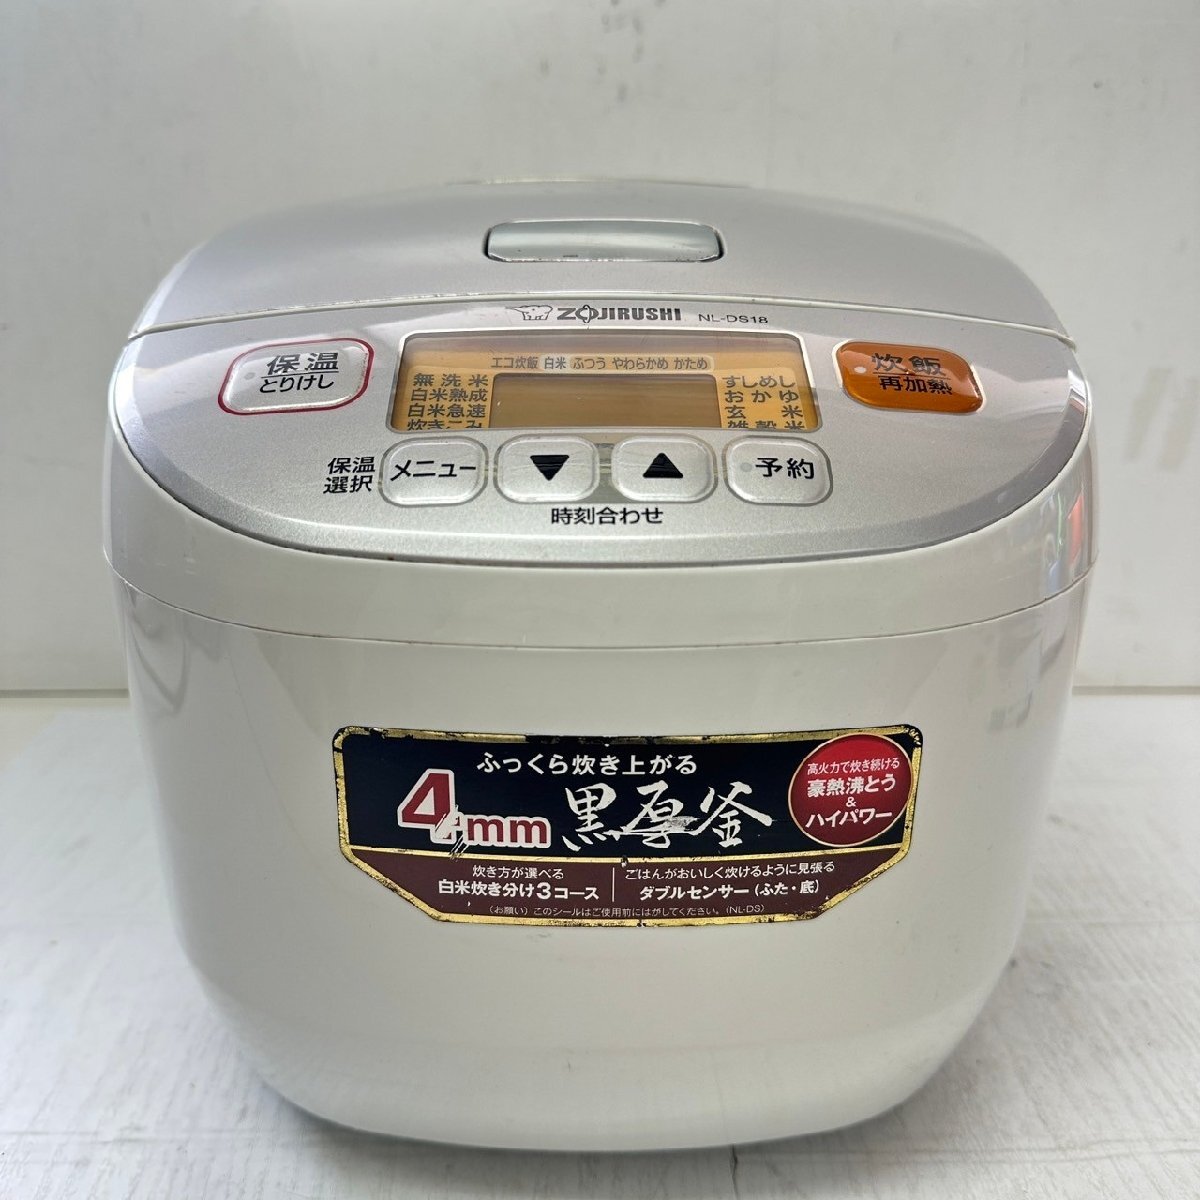 ZOJIRUSHI 象印マイコン炊飯ジャー NL-DS18 炊飯器 1升 10合炊き 18年製 6140の画像1